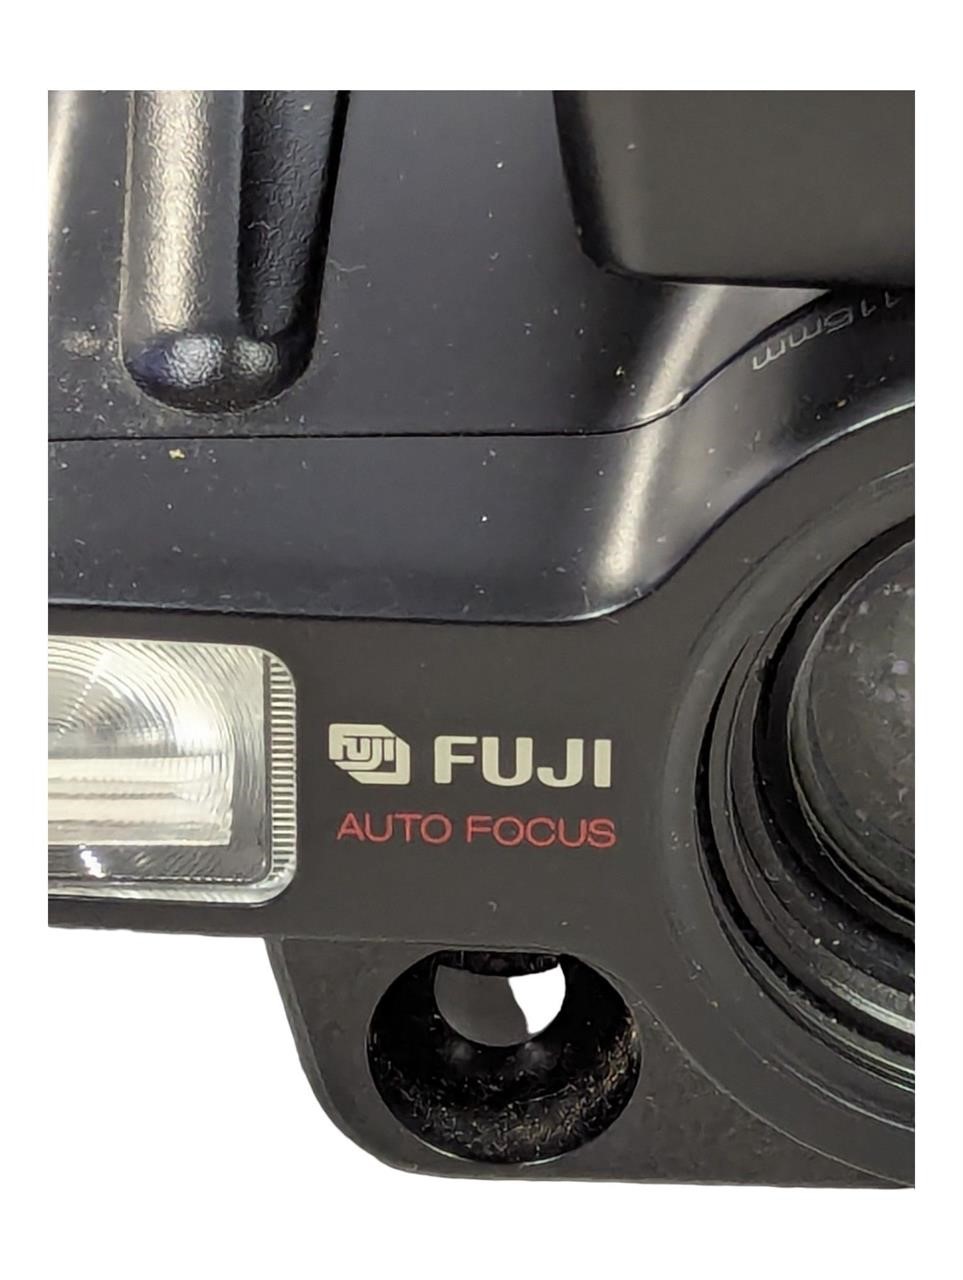 Fuji Autofocus Zoom Camera